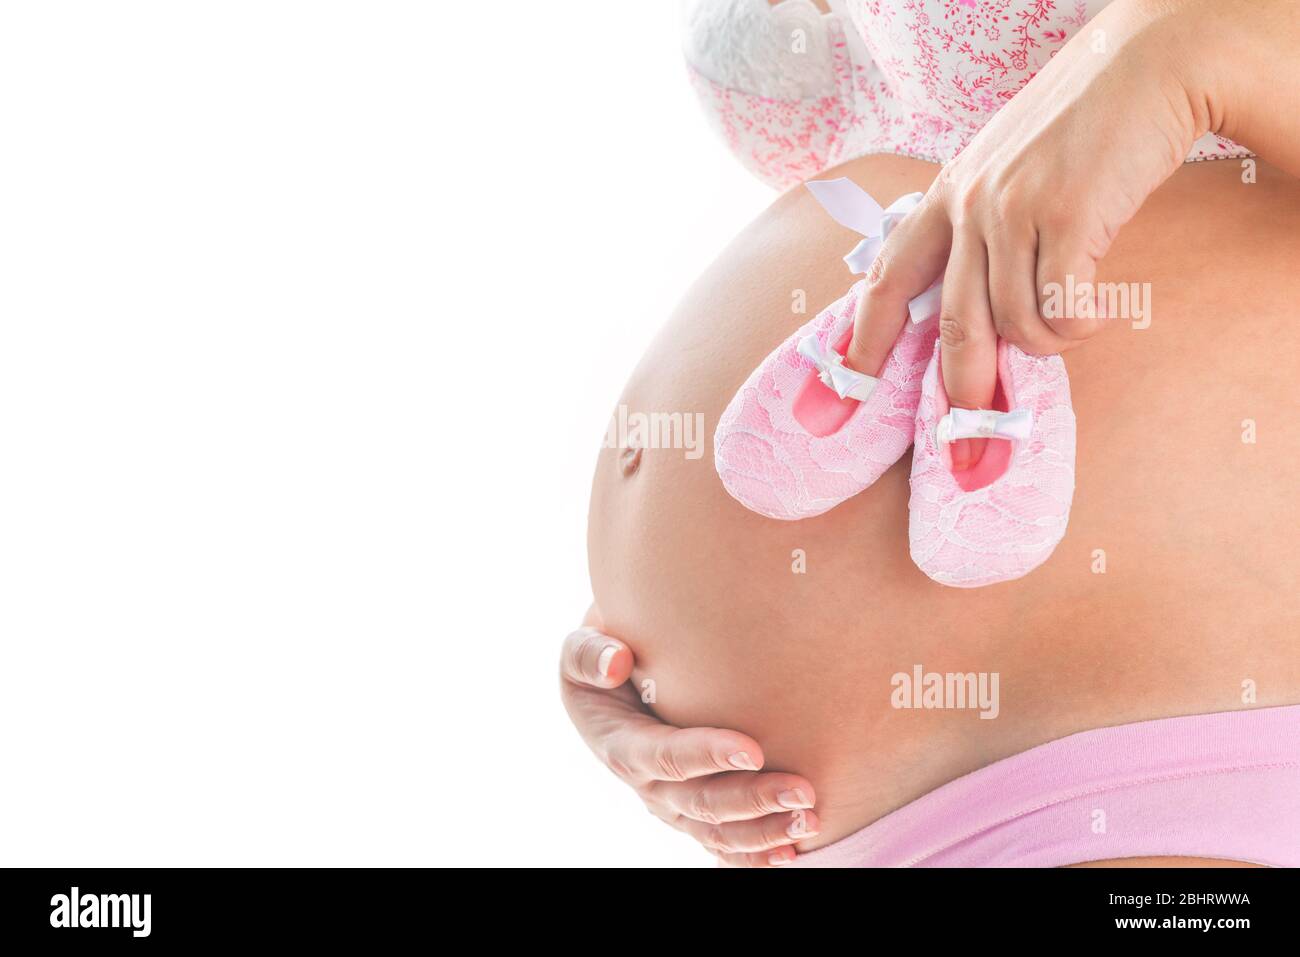 Nahaufnahme Bild der schwangeren Frau mit rosa Babygirl Schuhe auf ihrem Bauch. Isolierter Hintergrund. Mutterschaft pränatale Pflege und Frau Schwangerschaft Konzept. Stockfoto